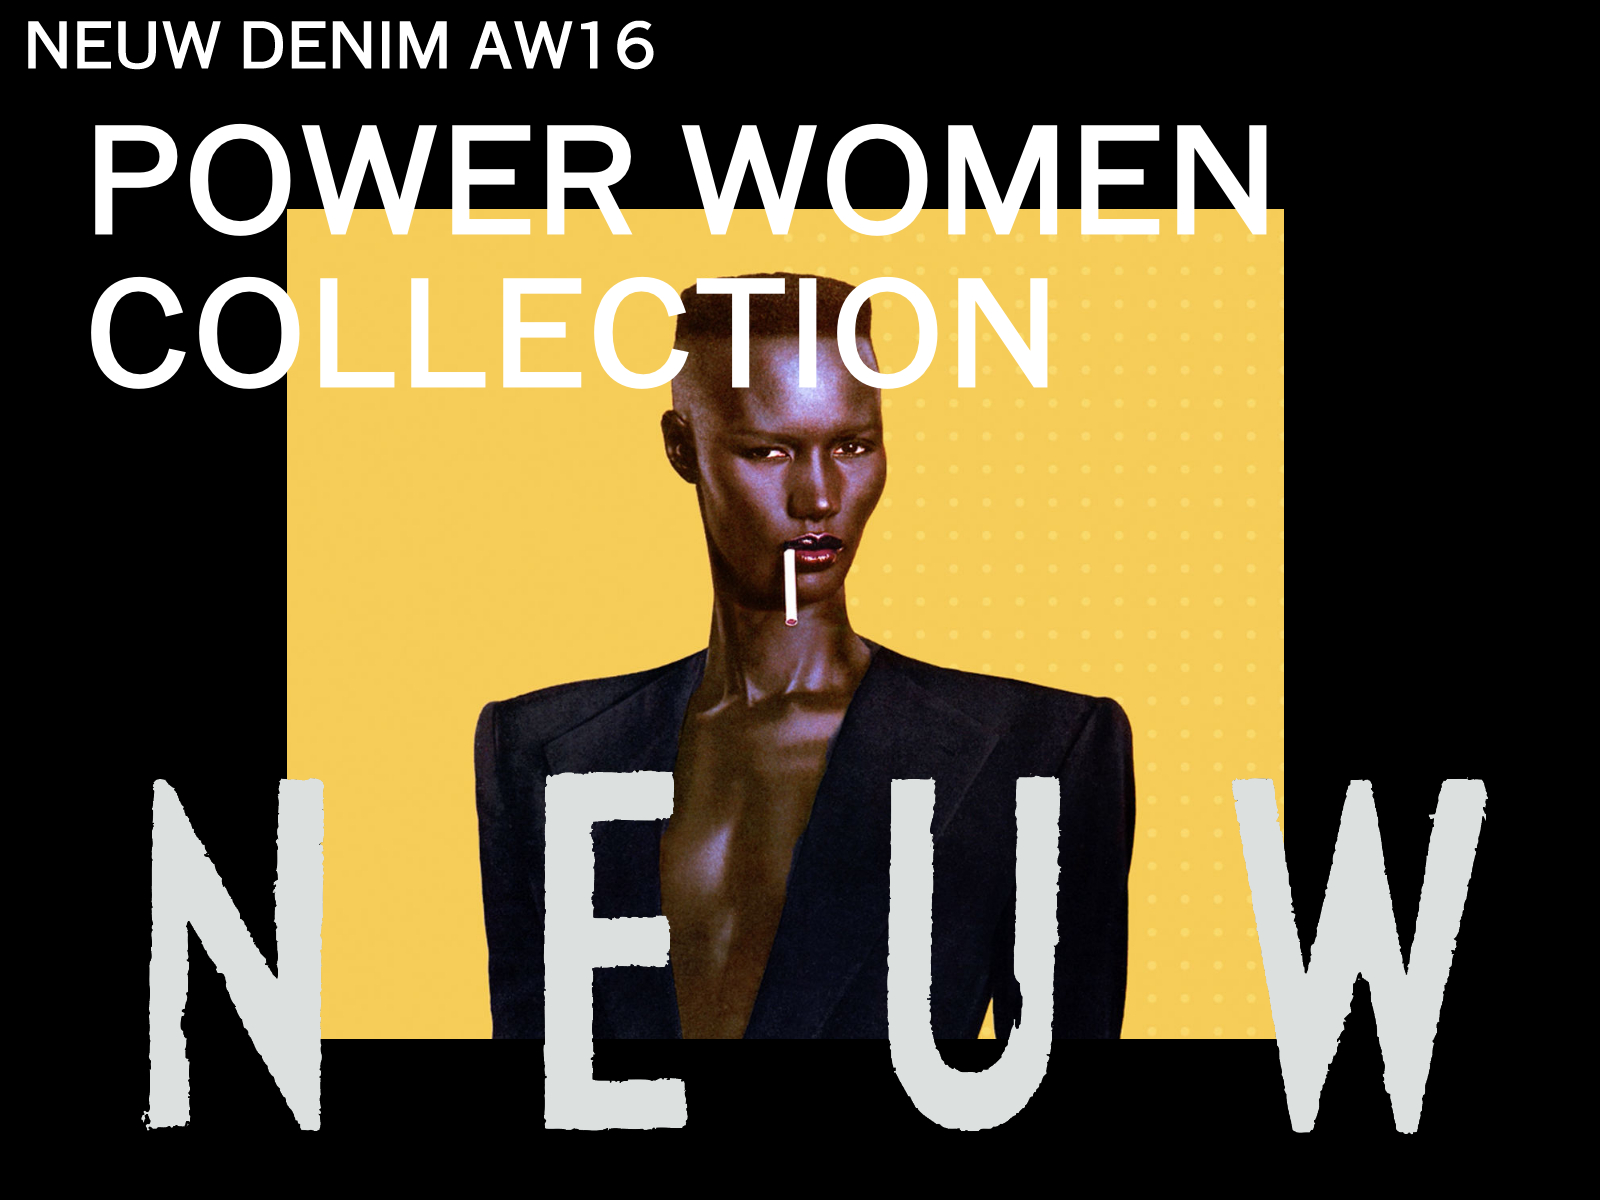 NEUW DENIM/FW16 POWER WOMEN COLLECTION